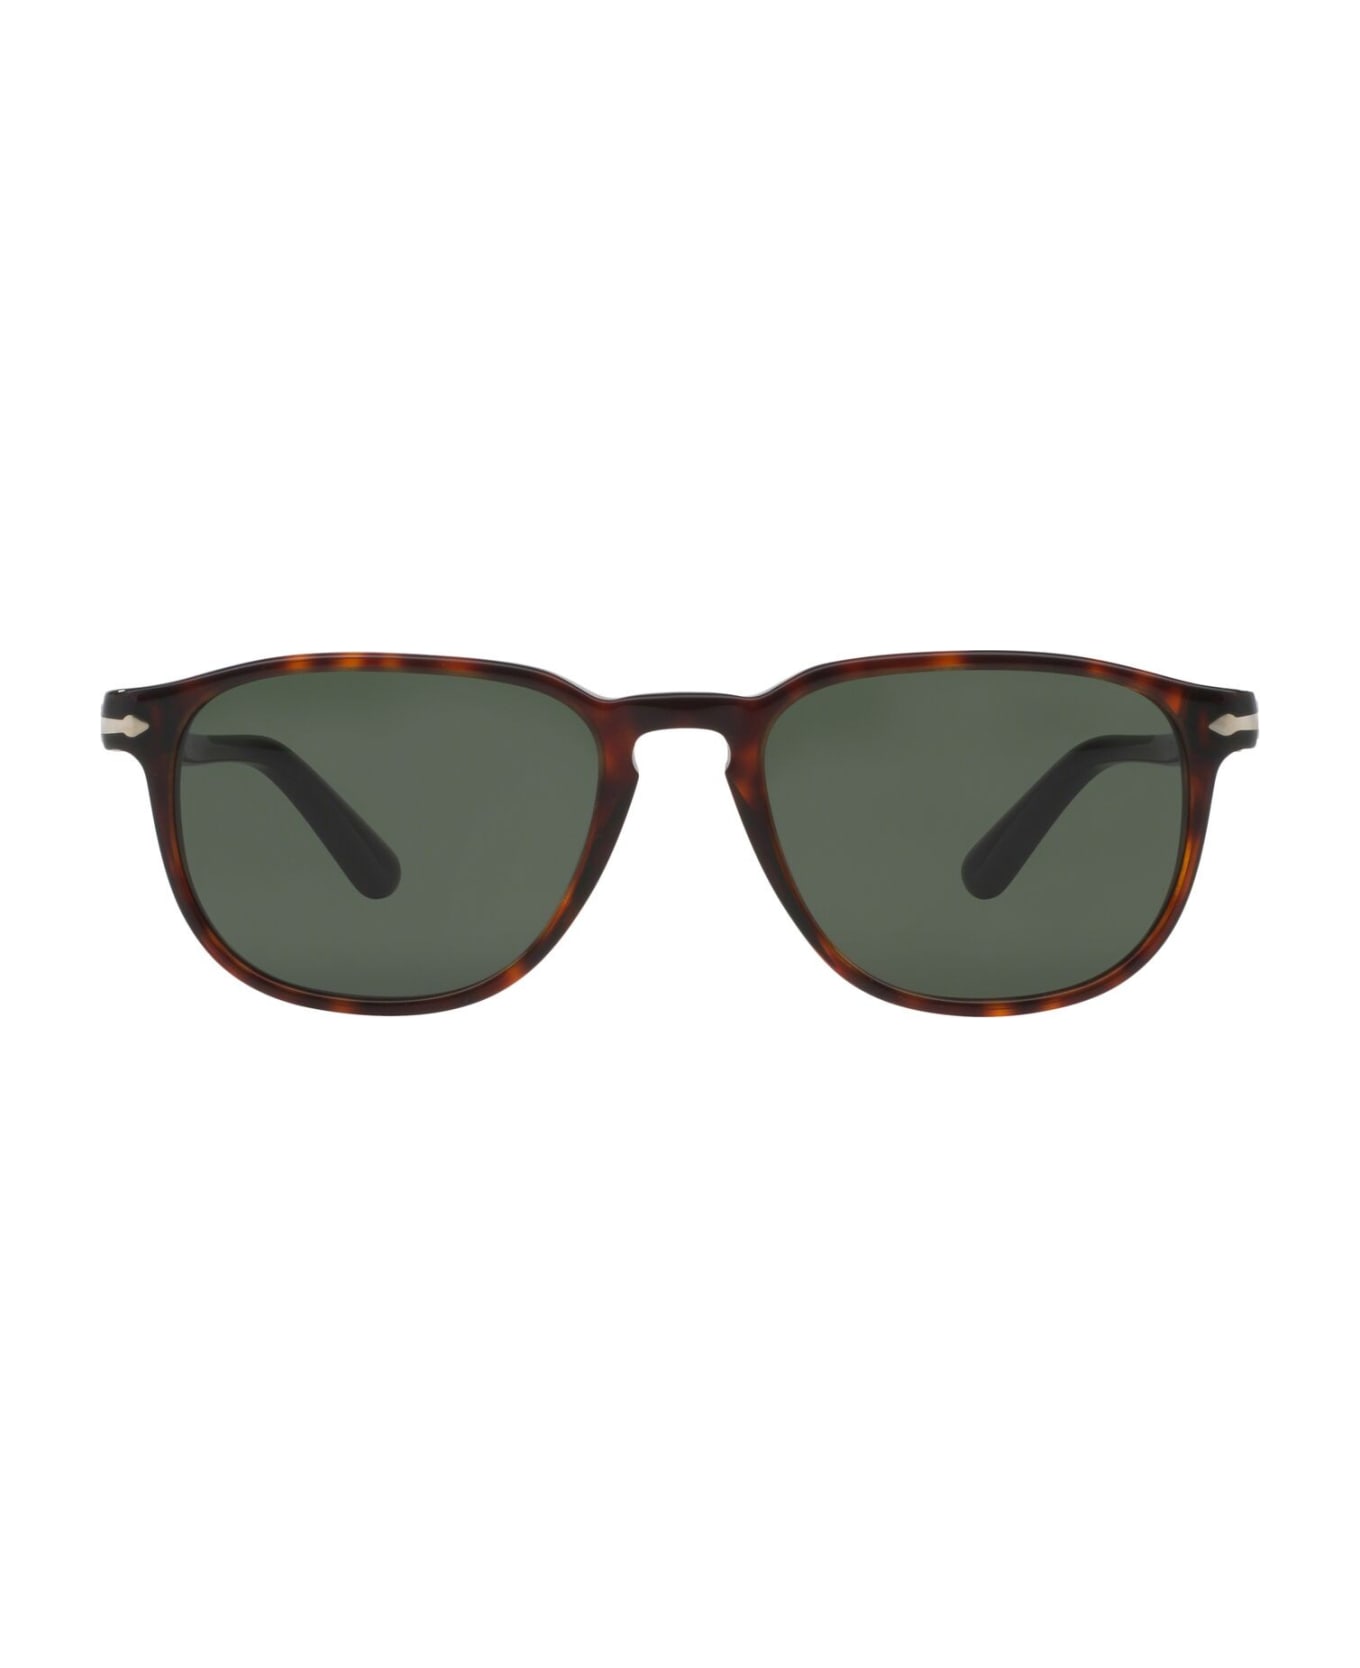 Persol Sunglasses - Marrone tartarugato/Verde